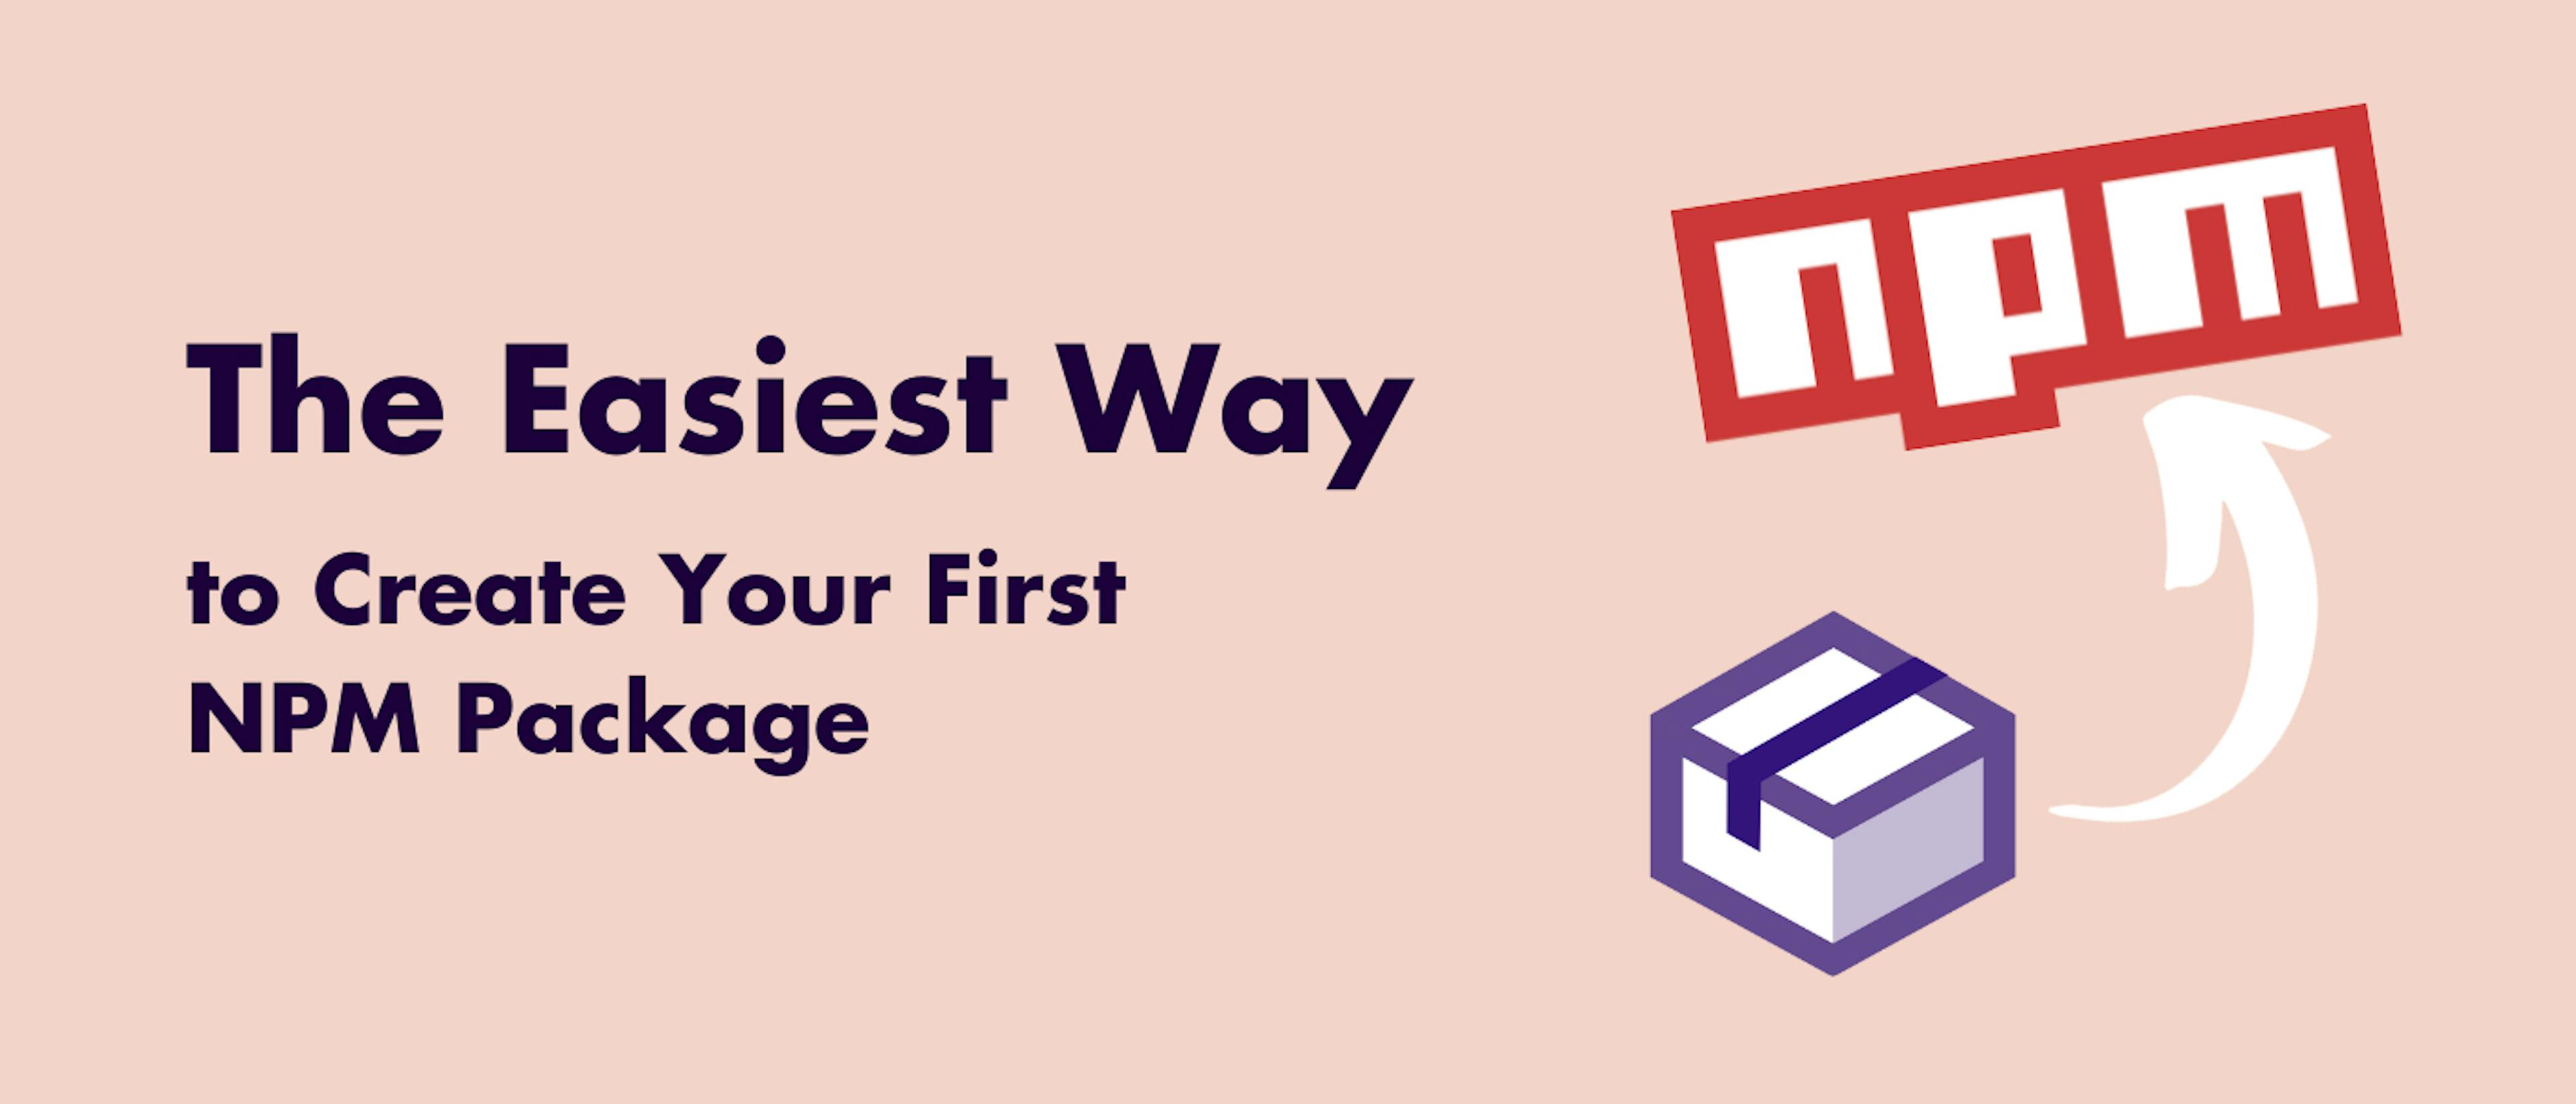 featured image - Der einfachste Weg, Ihr erstes NPM-Paket zu erstellen